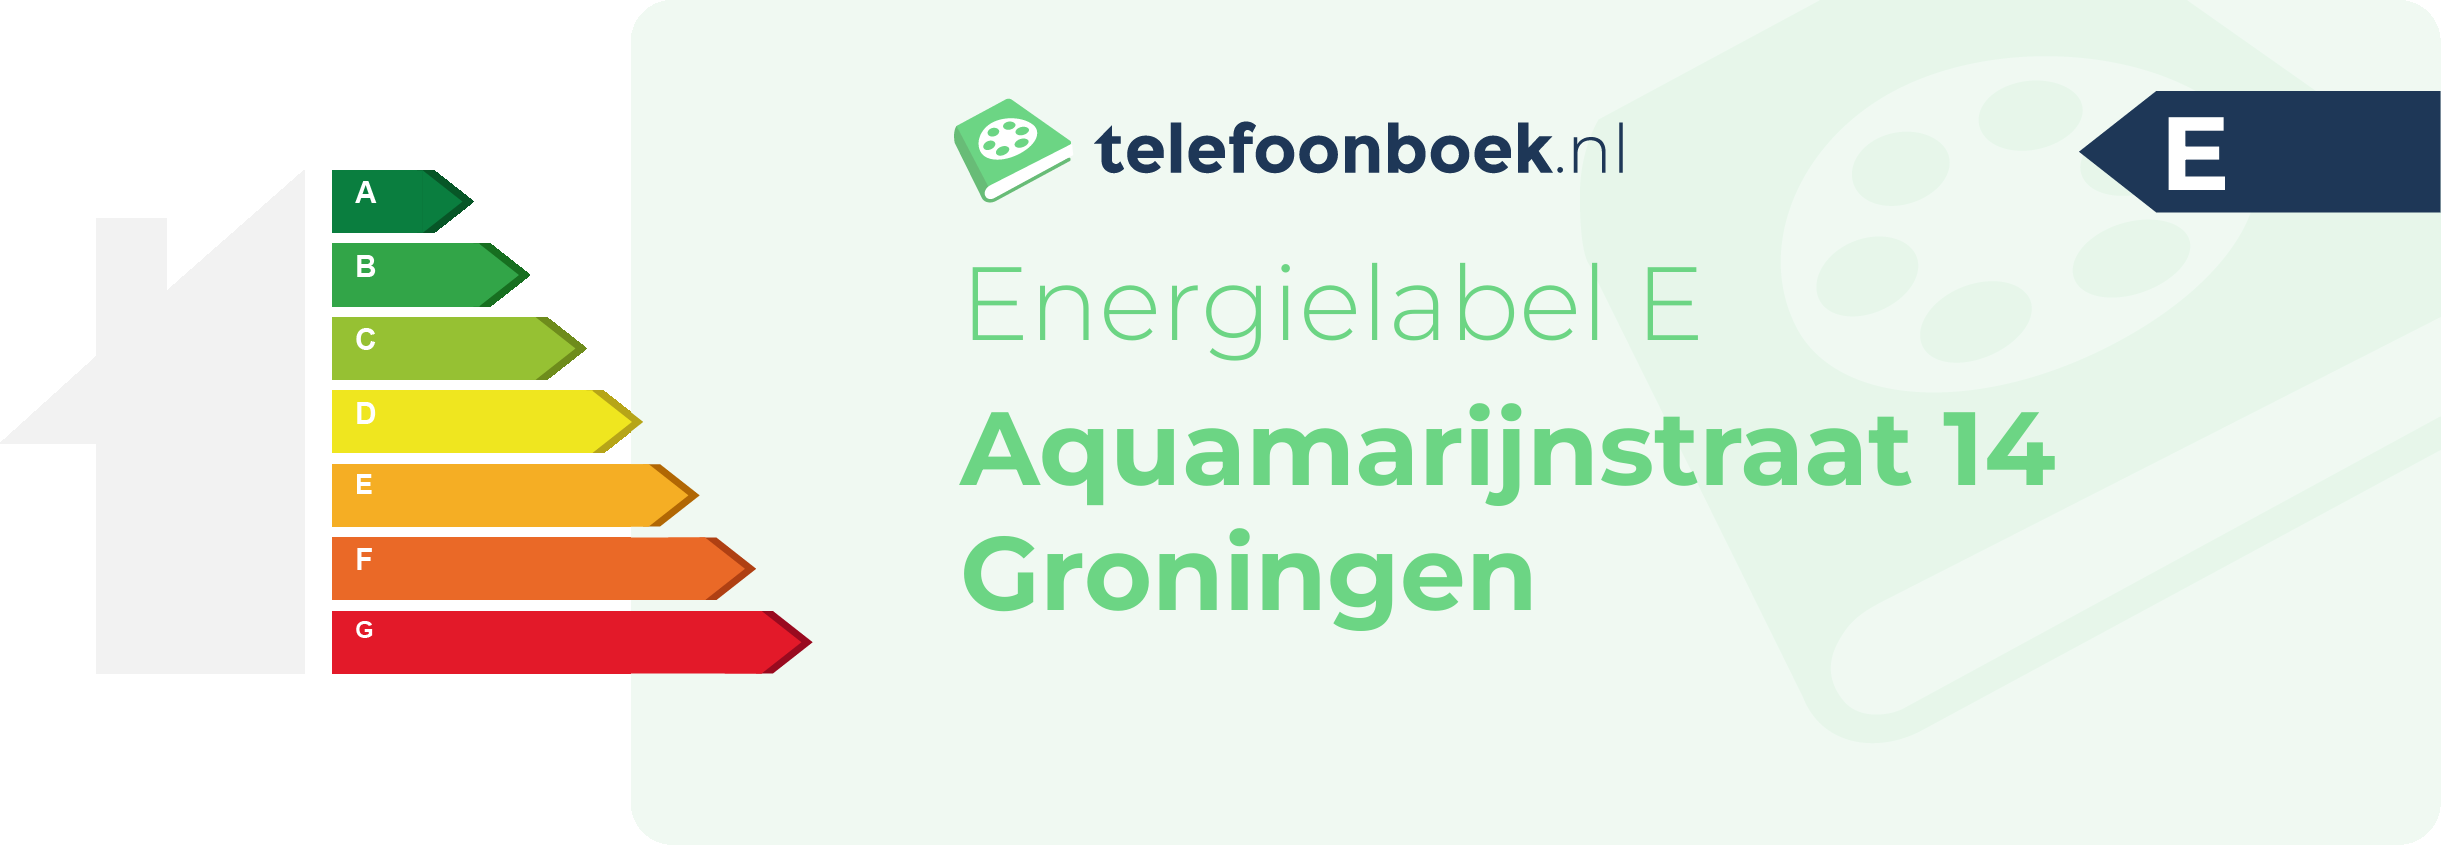 Energielabel Aquamarijnstraat 14 Groningen